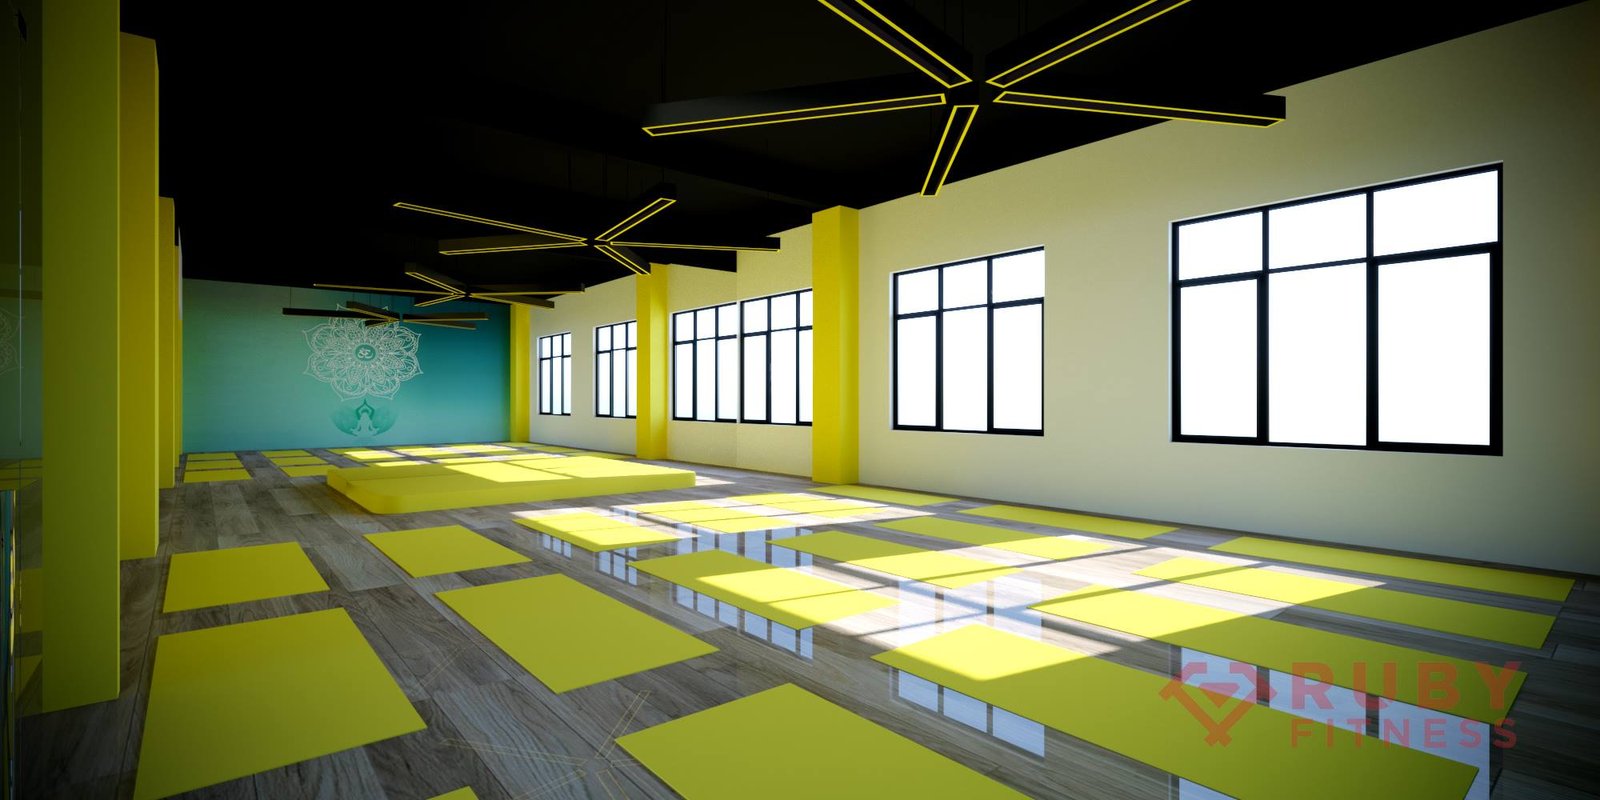  Thiết kế bản ảnh 3D mô phỏng cho phòng tập yoga